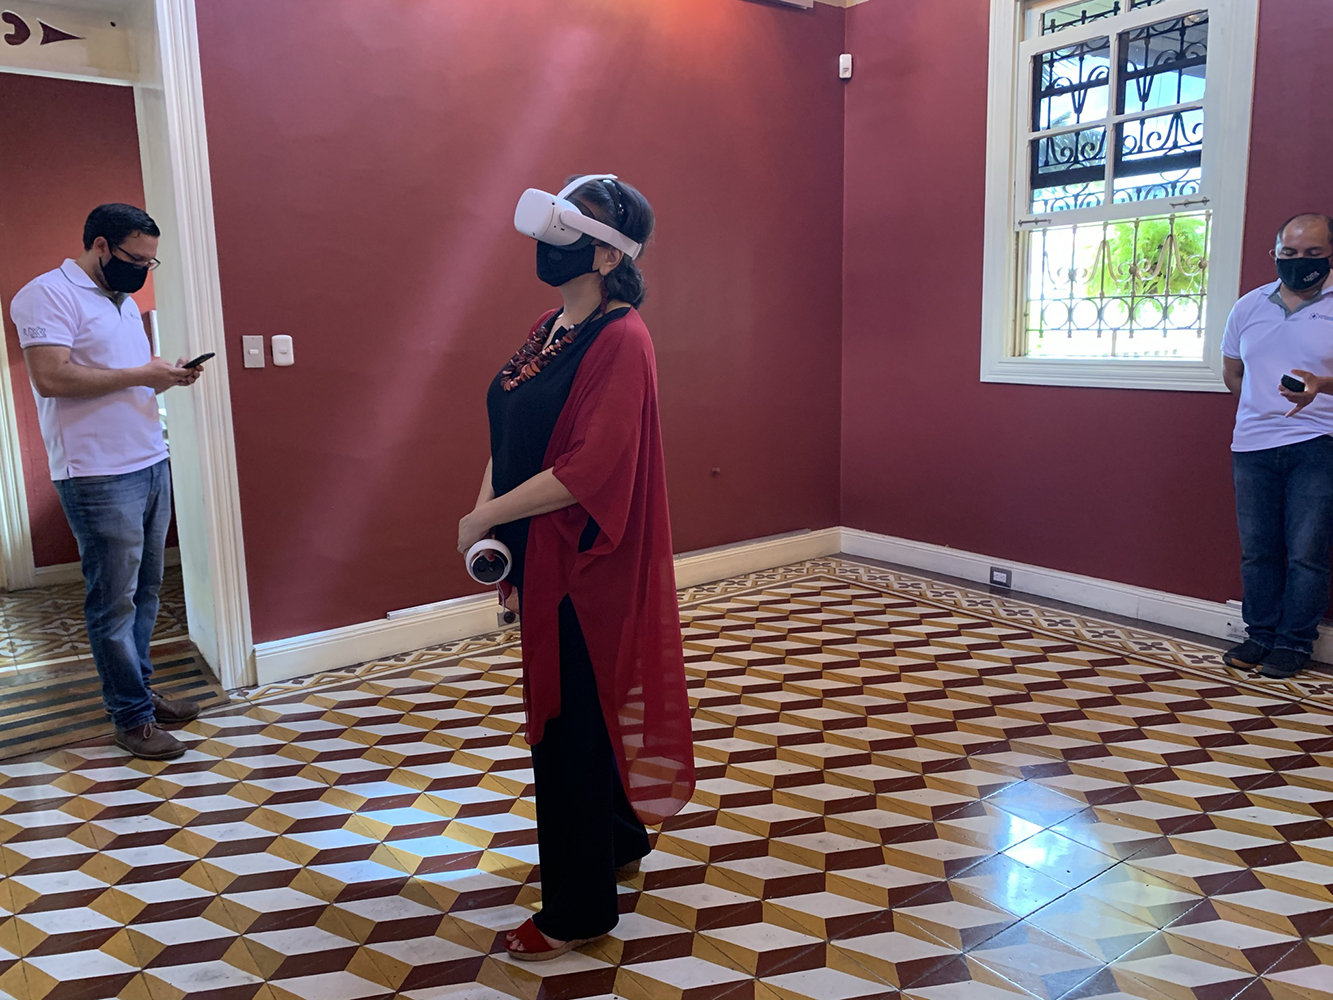 La experiencia se vive a través del visor Oculus Quest